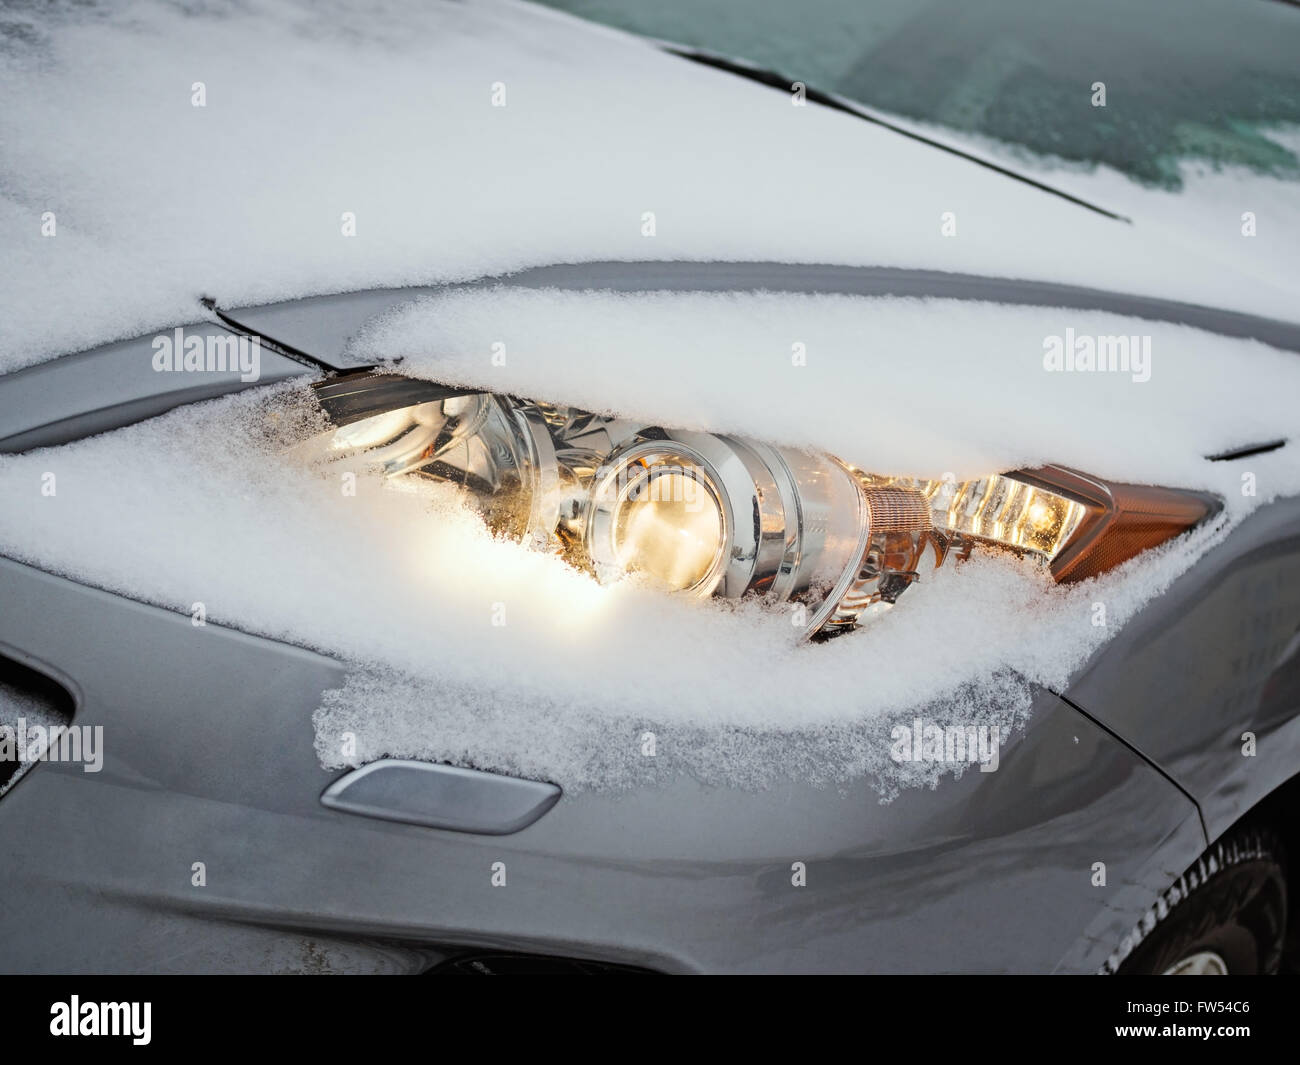 Projecteur lumineux d'une voiture couverte de neige qu'il est conduit pendant une tempête de neige Banque D'Images